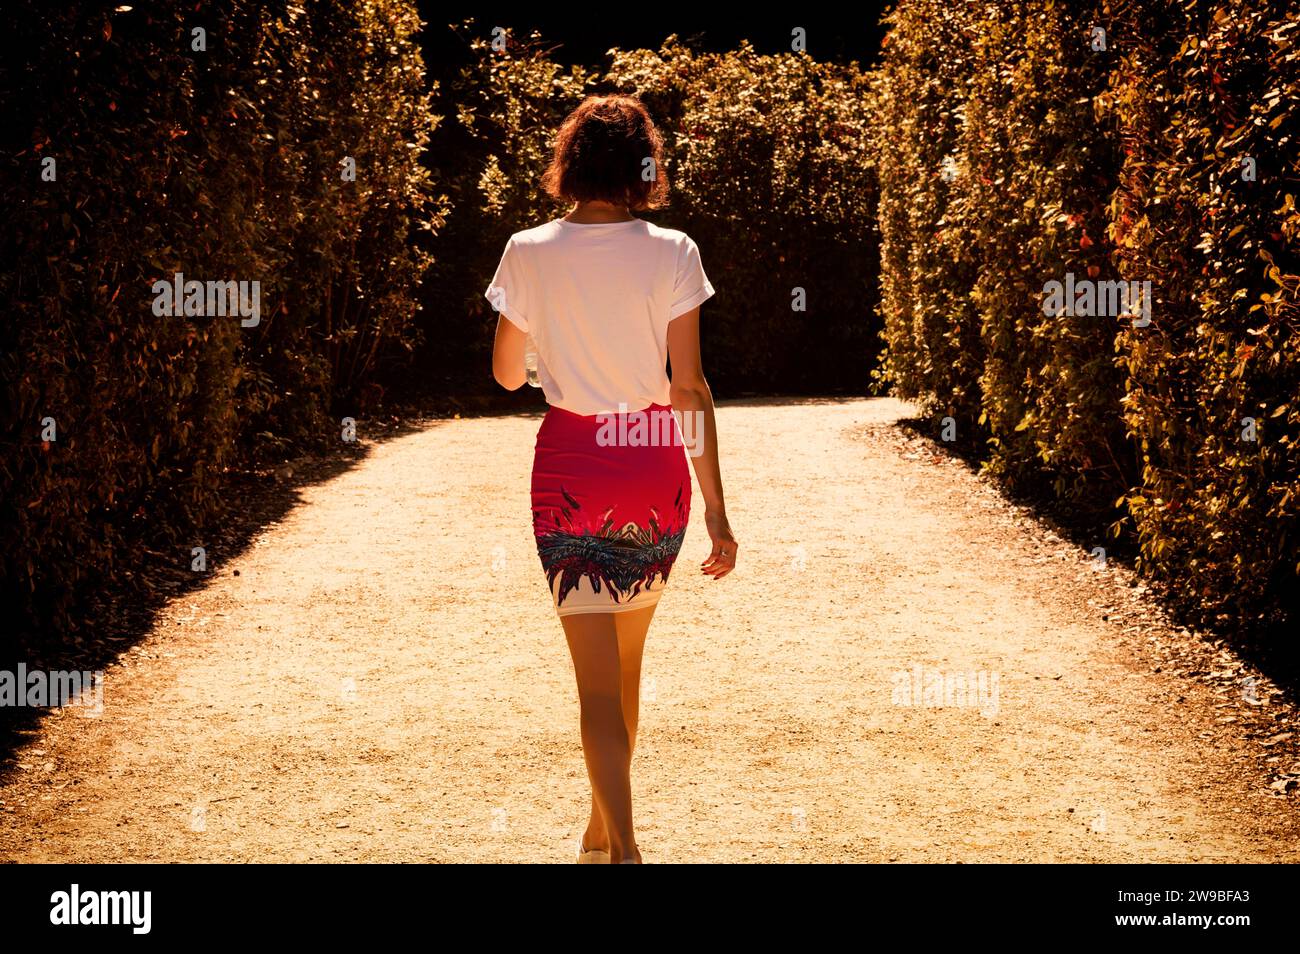 Porträt einer charmanten Frau, die in den Boboli-Gärten spaziert. Rückansicht. Tourismus und Reisekonzept. Gemischte Medien Stockfoto